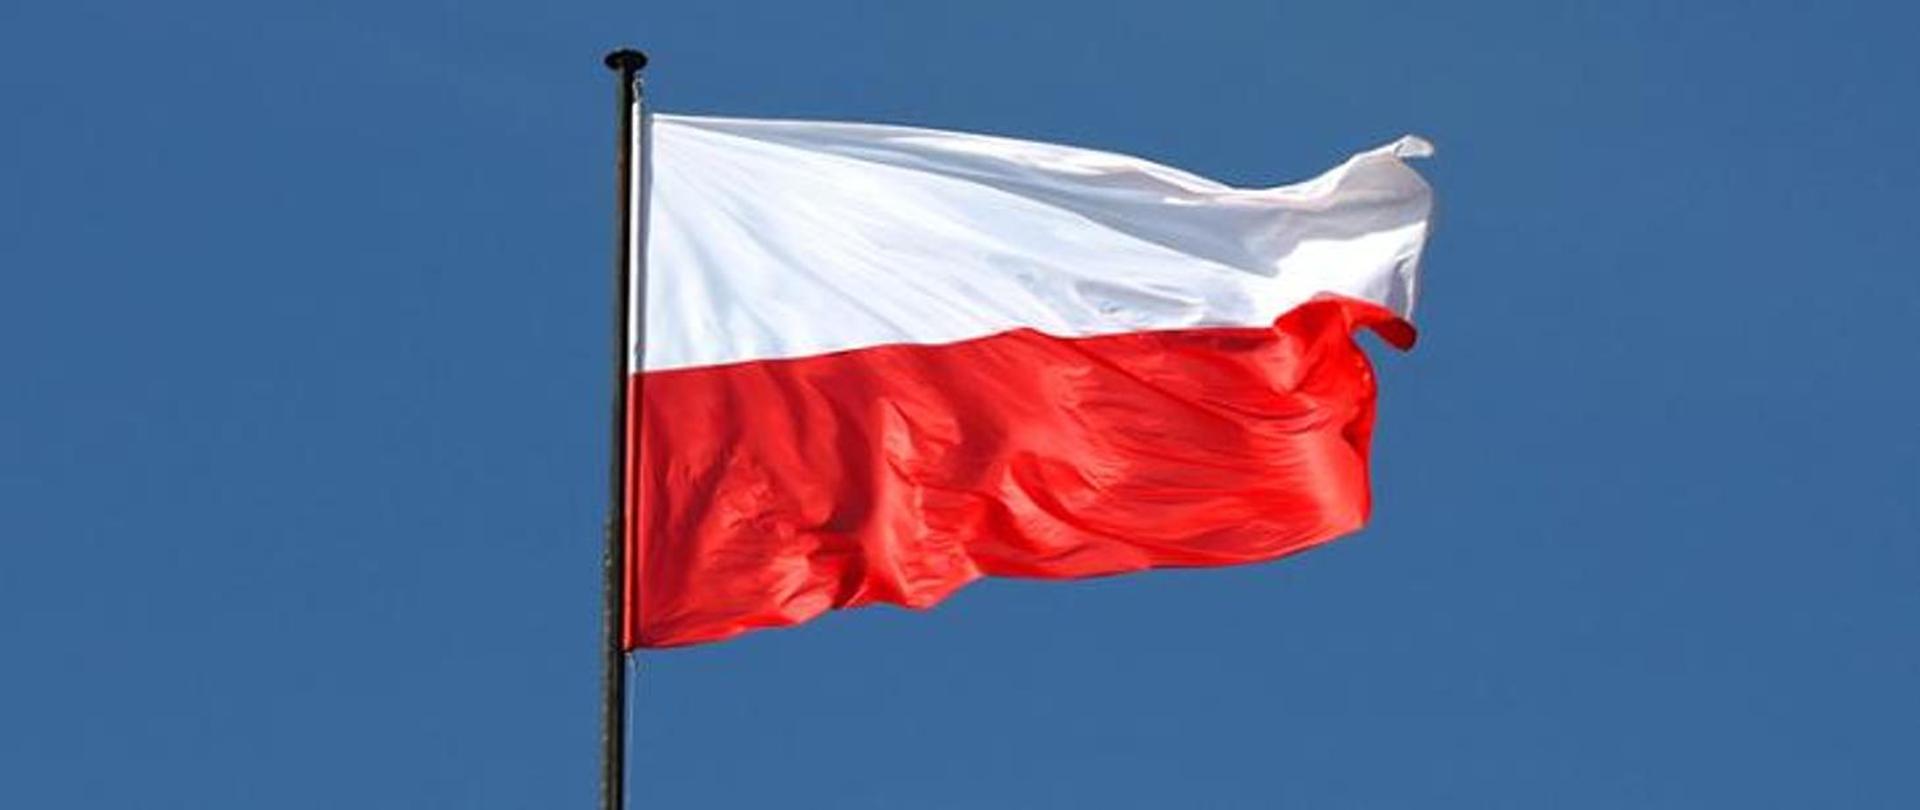 Na zdjęciu widać flagę Polski powiewająca na maszcie na tle bezchmurnego błękitnego nieba.